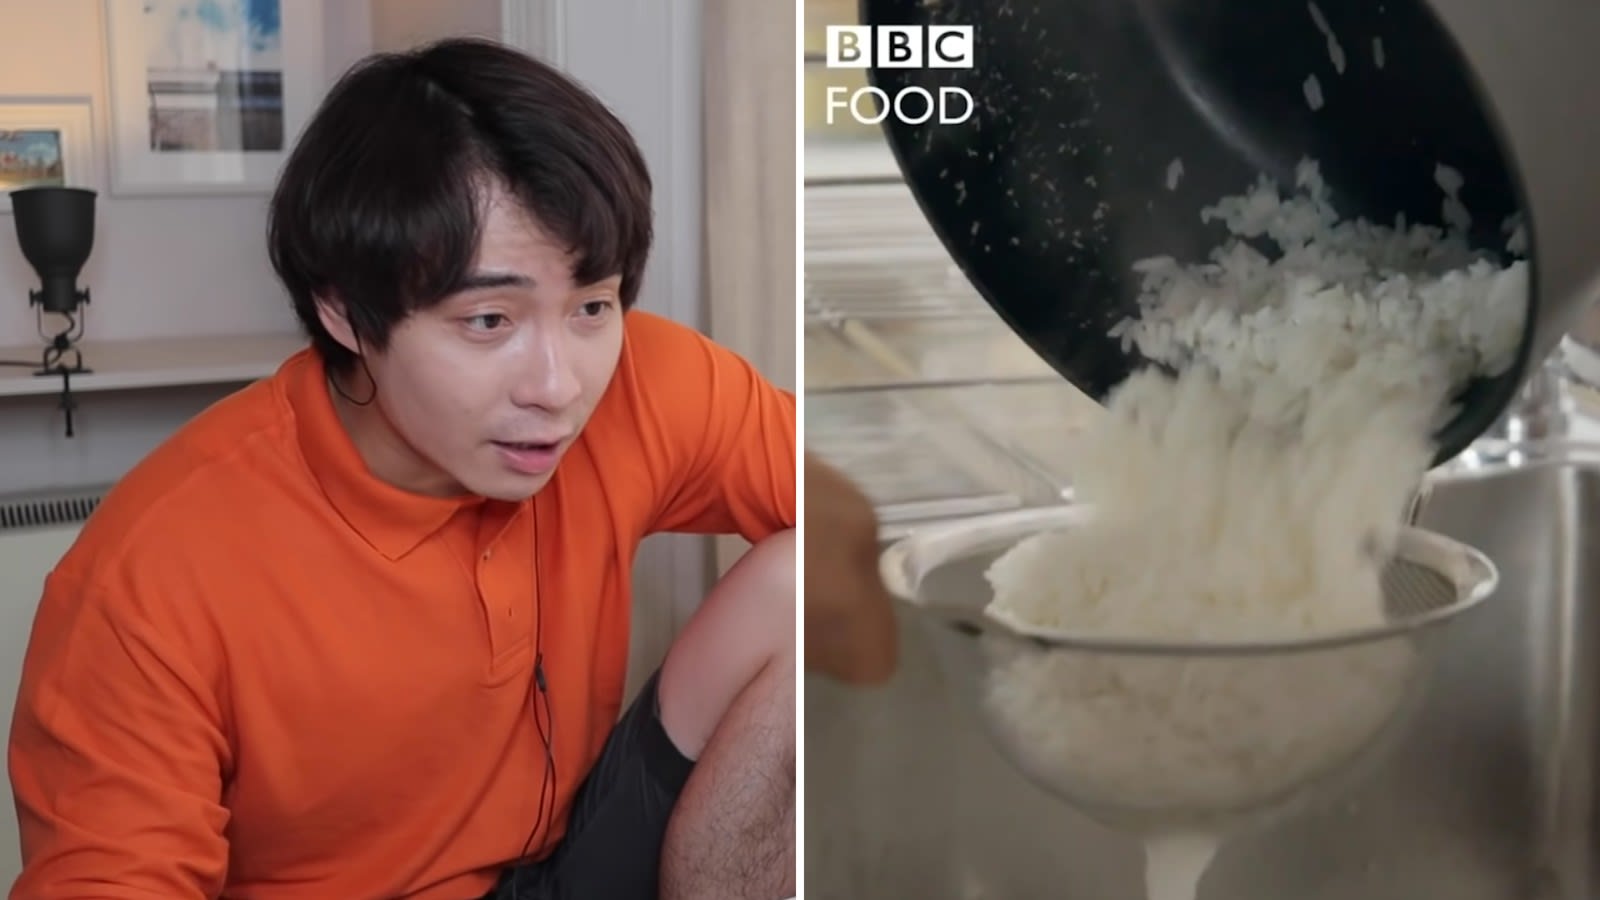 فيديو لطريقة تحضير الأرز يثير موجة غضب.. ما السبب؟